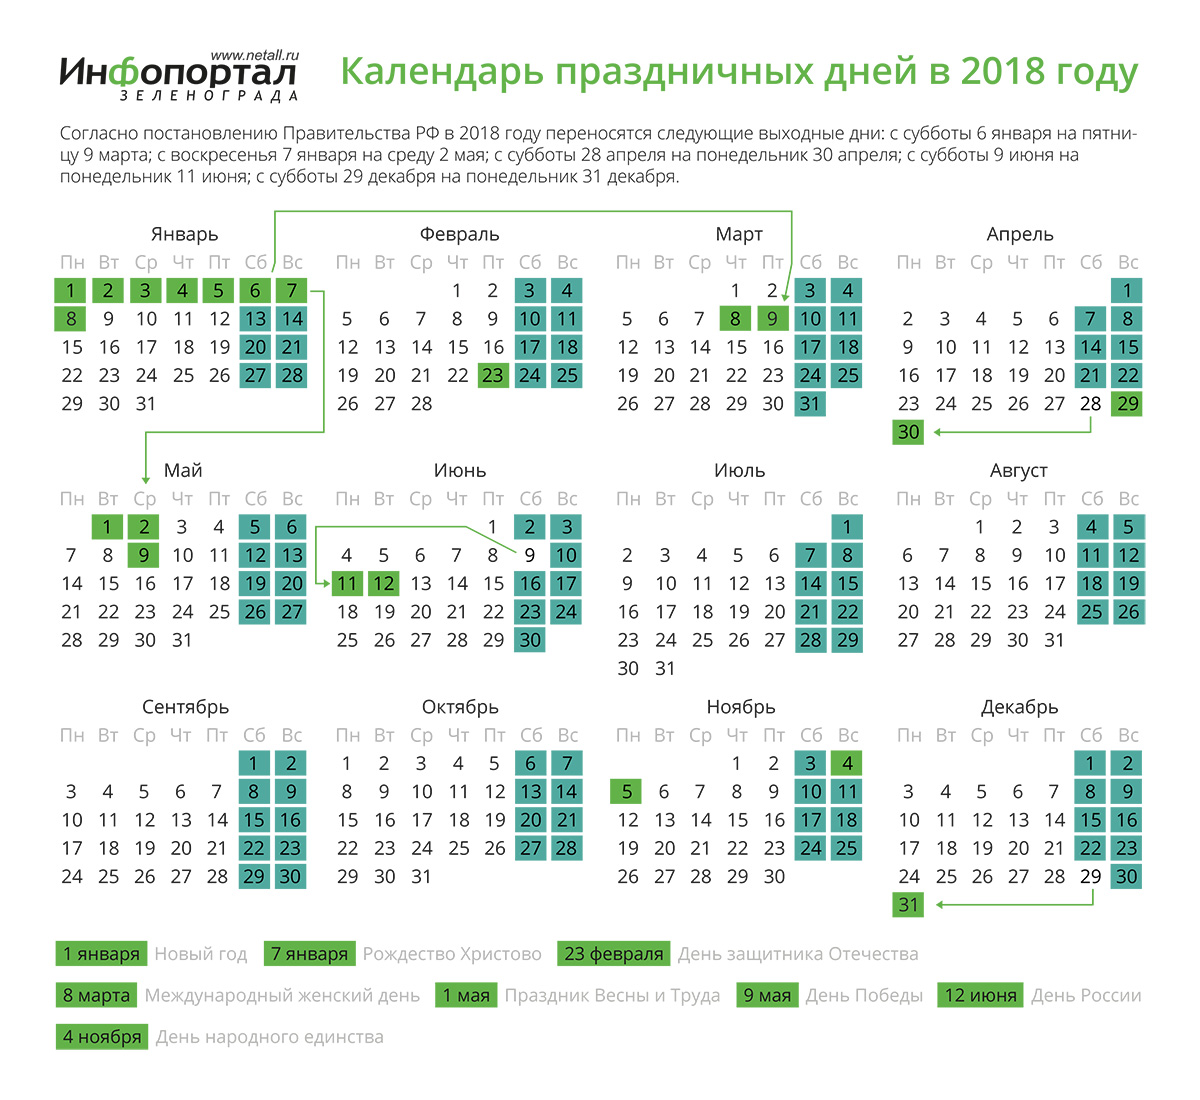 Зеленоград, новости: Календарь праздников на 2018 год